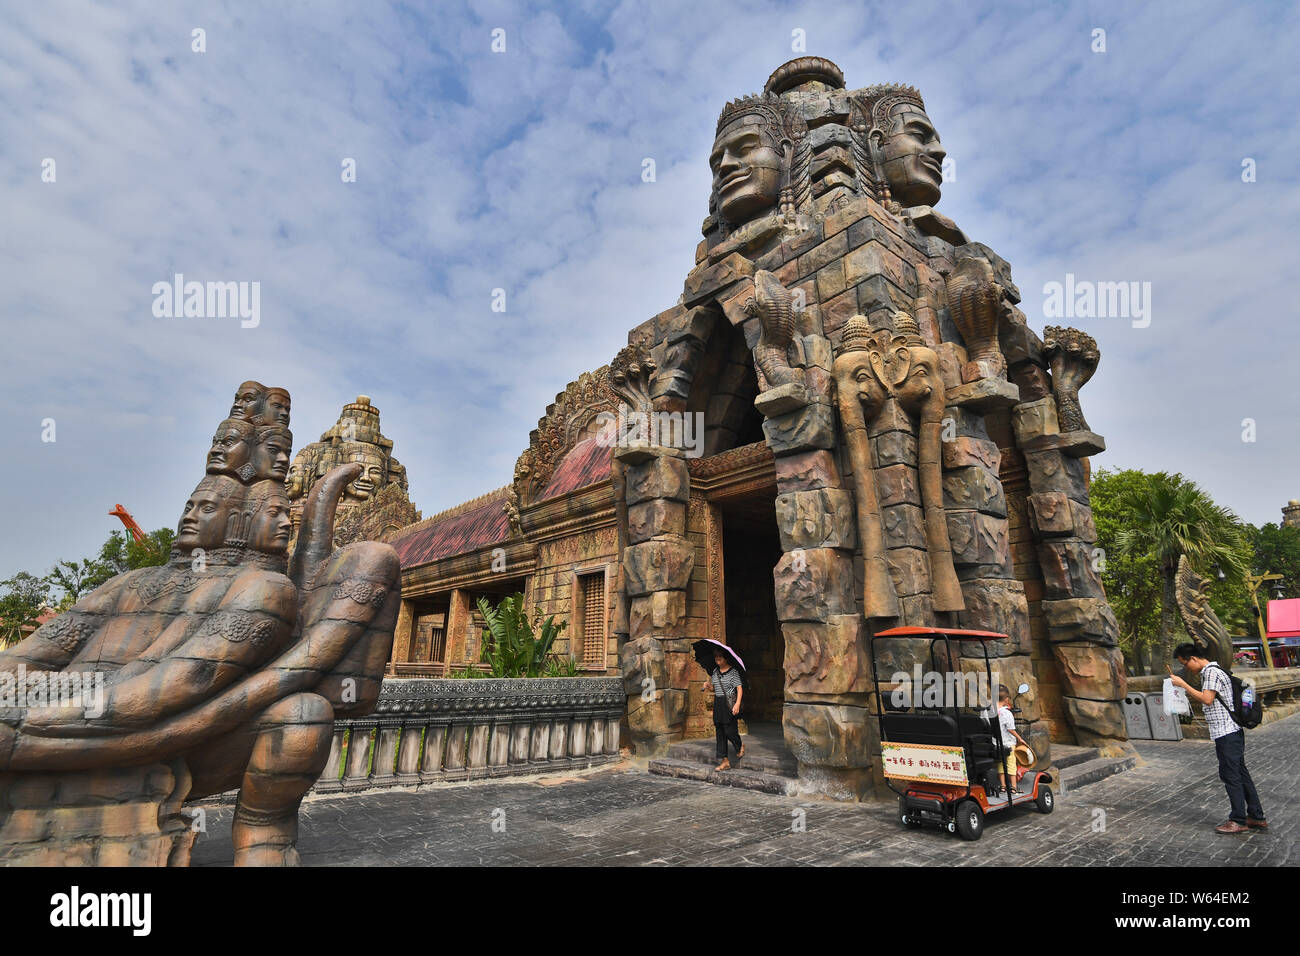 Les touristes visitent une réplique du Cambodge, Angkor Wat temple complexe à une attraction touristique dans la ville de Nanning, Chine du sud autonome Zhuang du Guangxi du Regi Banque D'Images